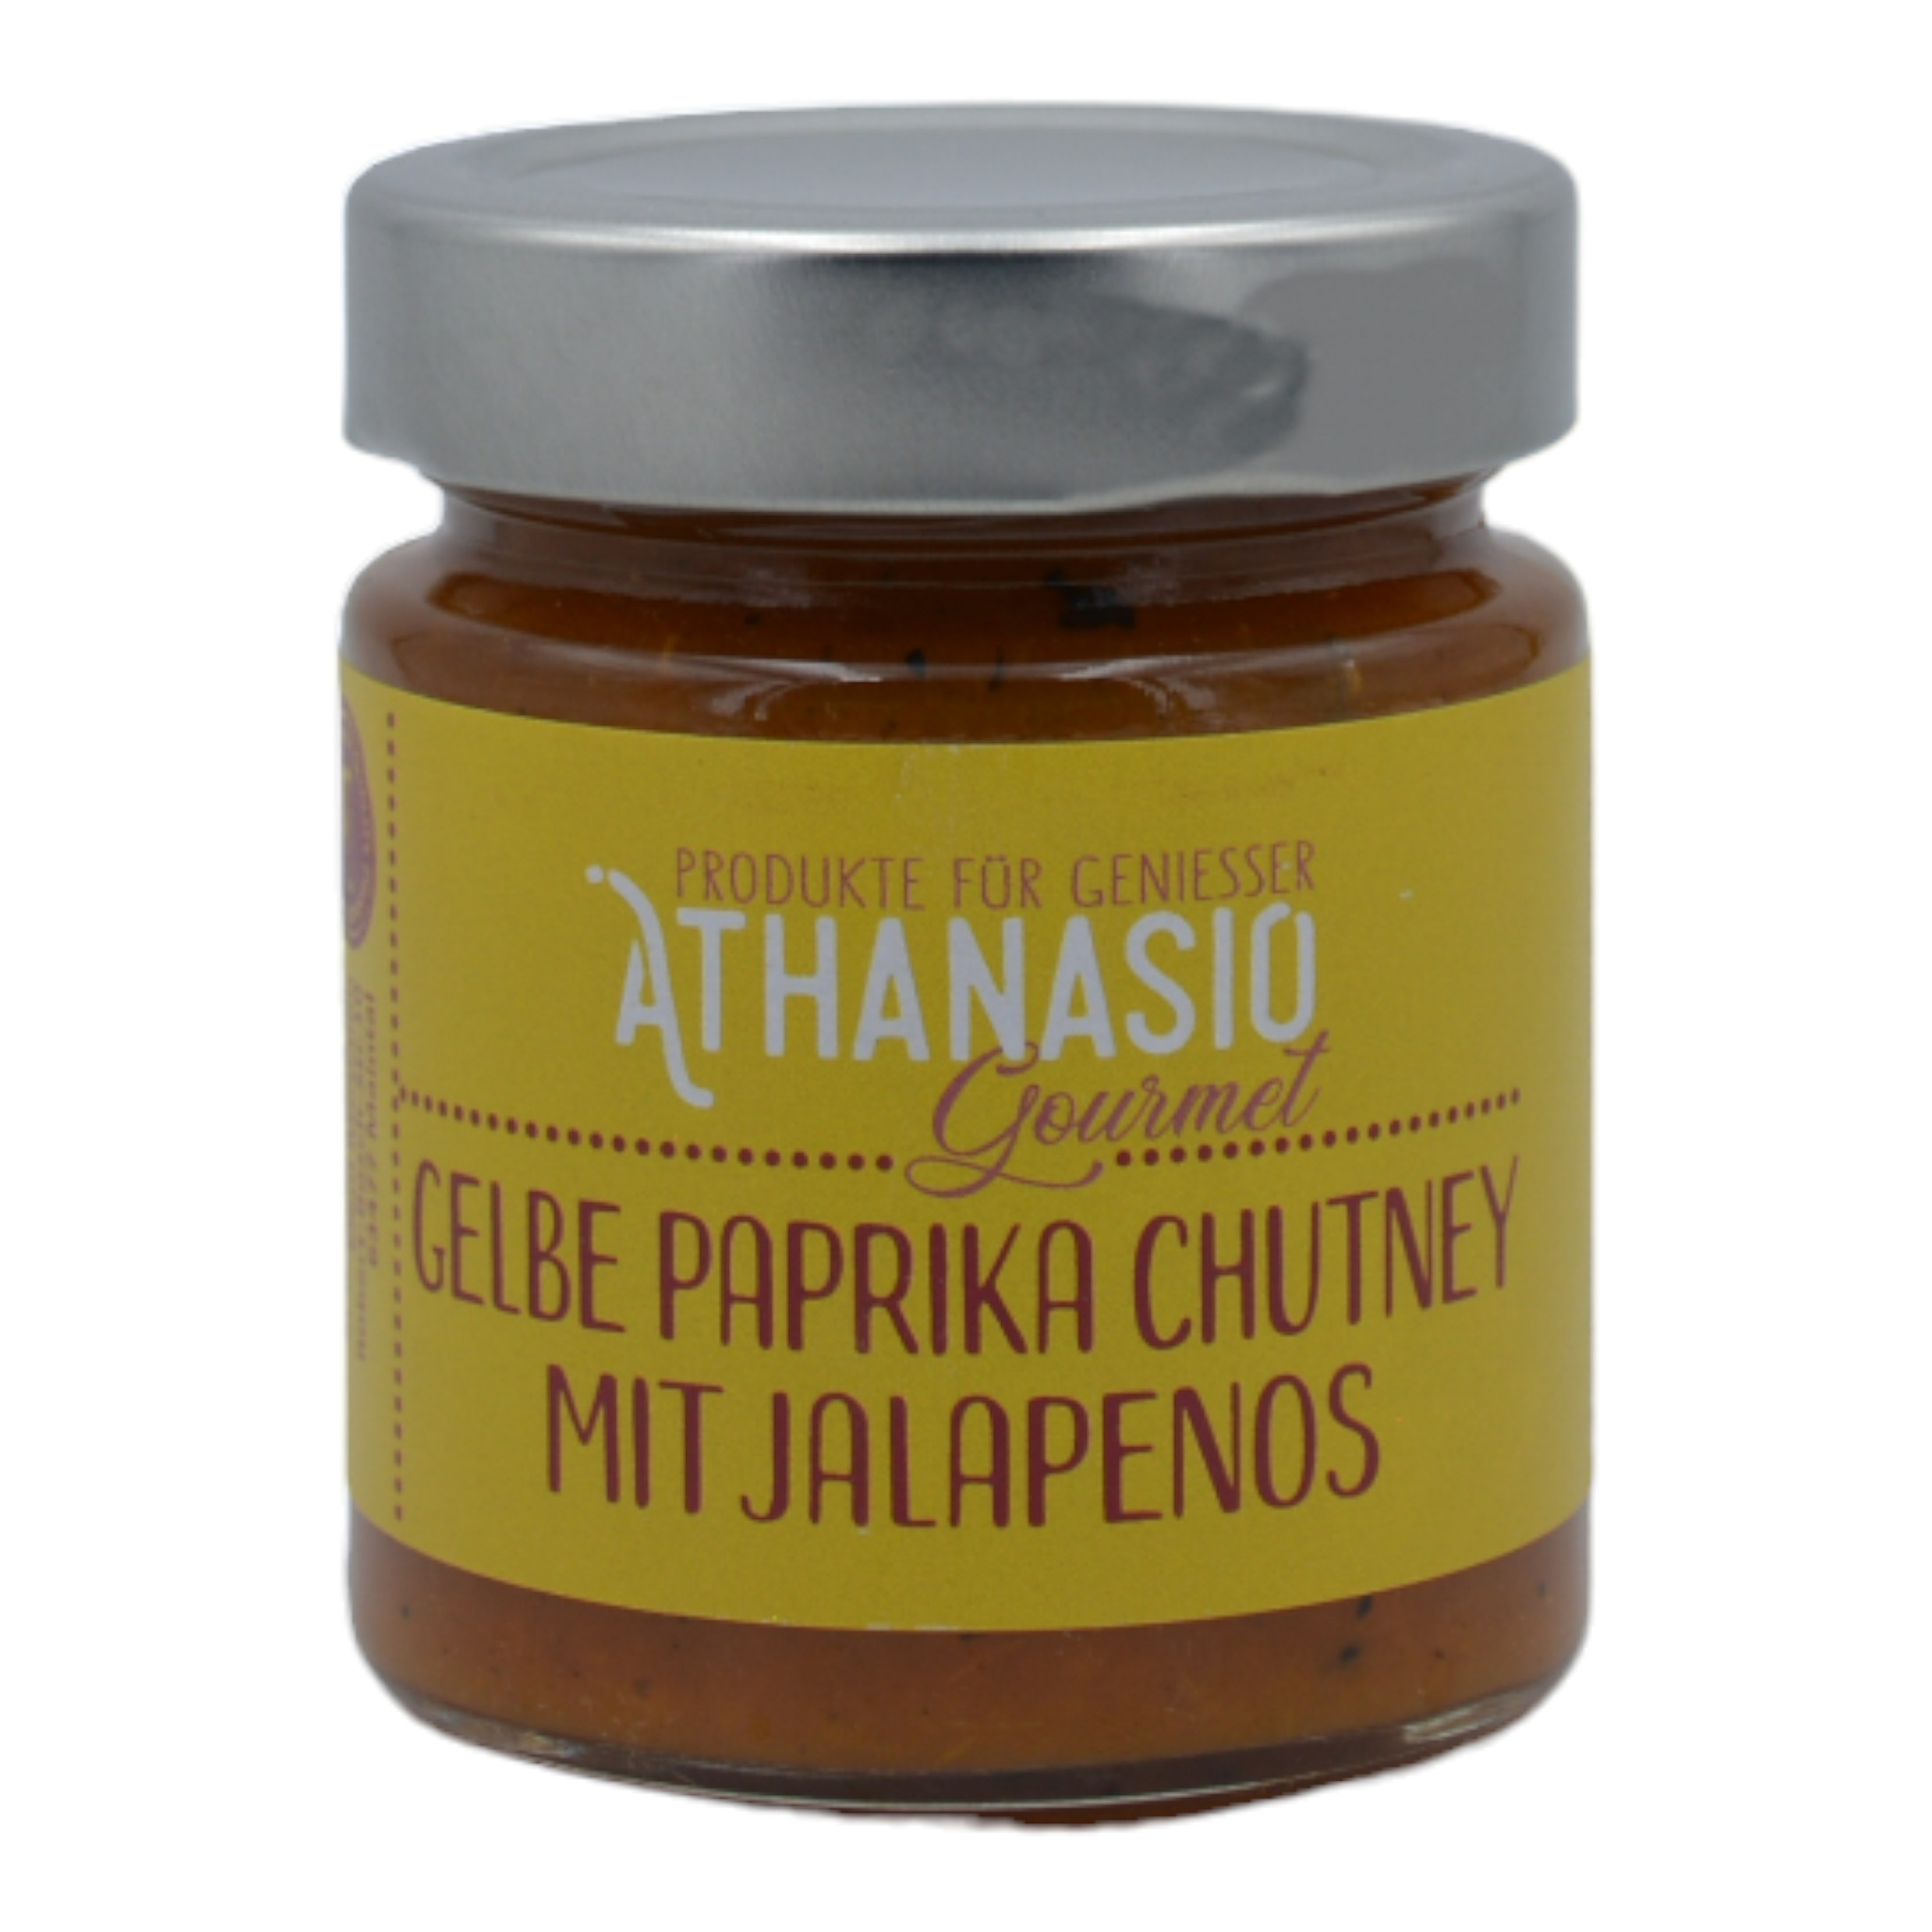 5200250212146Athanasio Gourmet Gelbe Paprika Chutney mit Jalapenos f